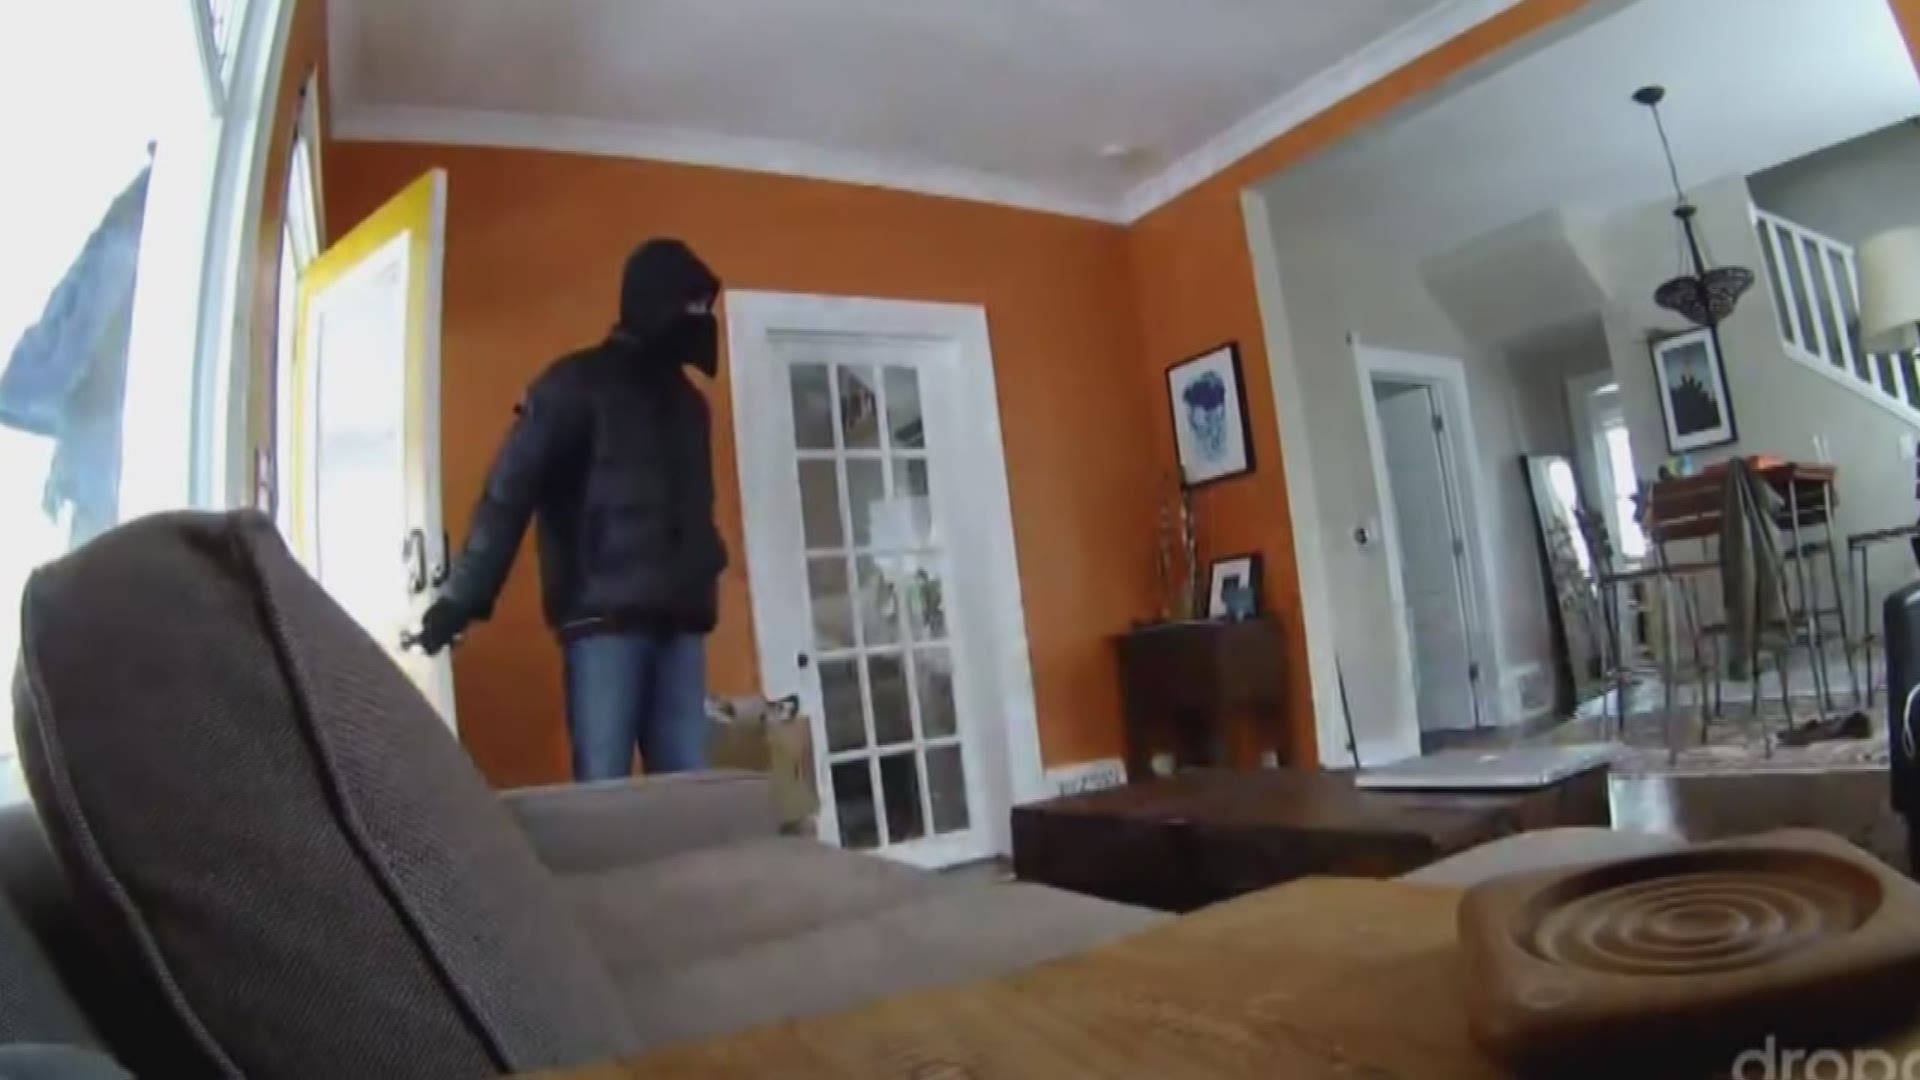 86 Burglars Explain How They Break Into Houses